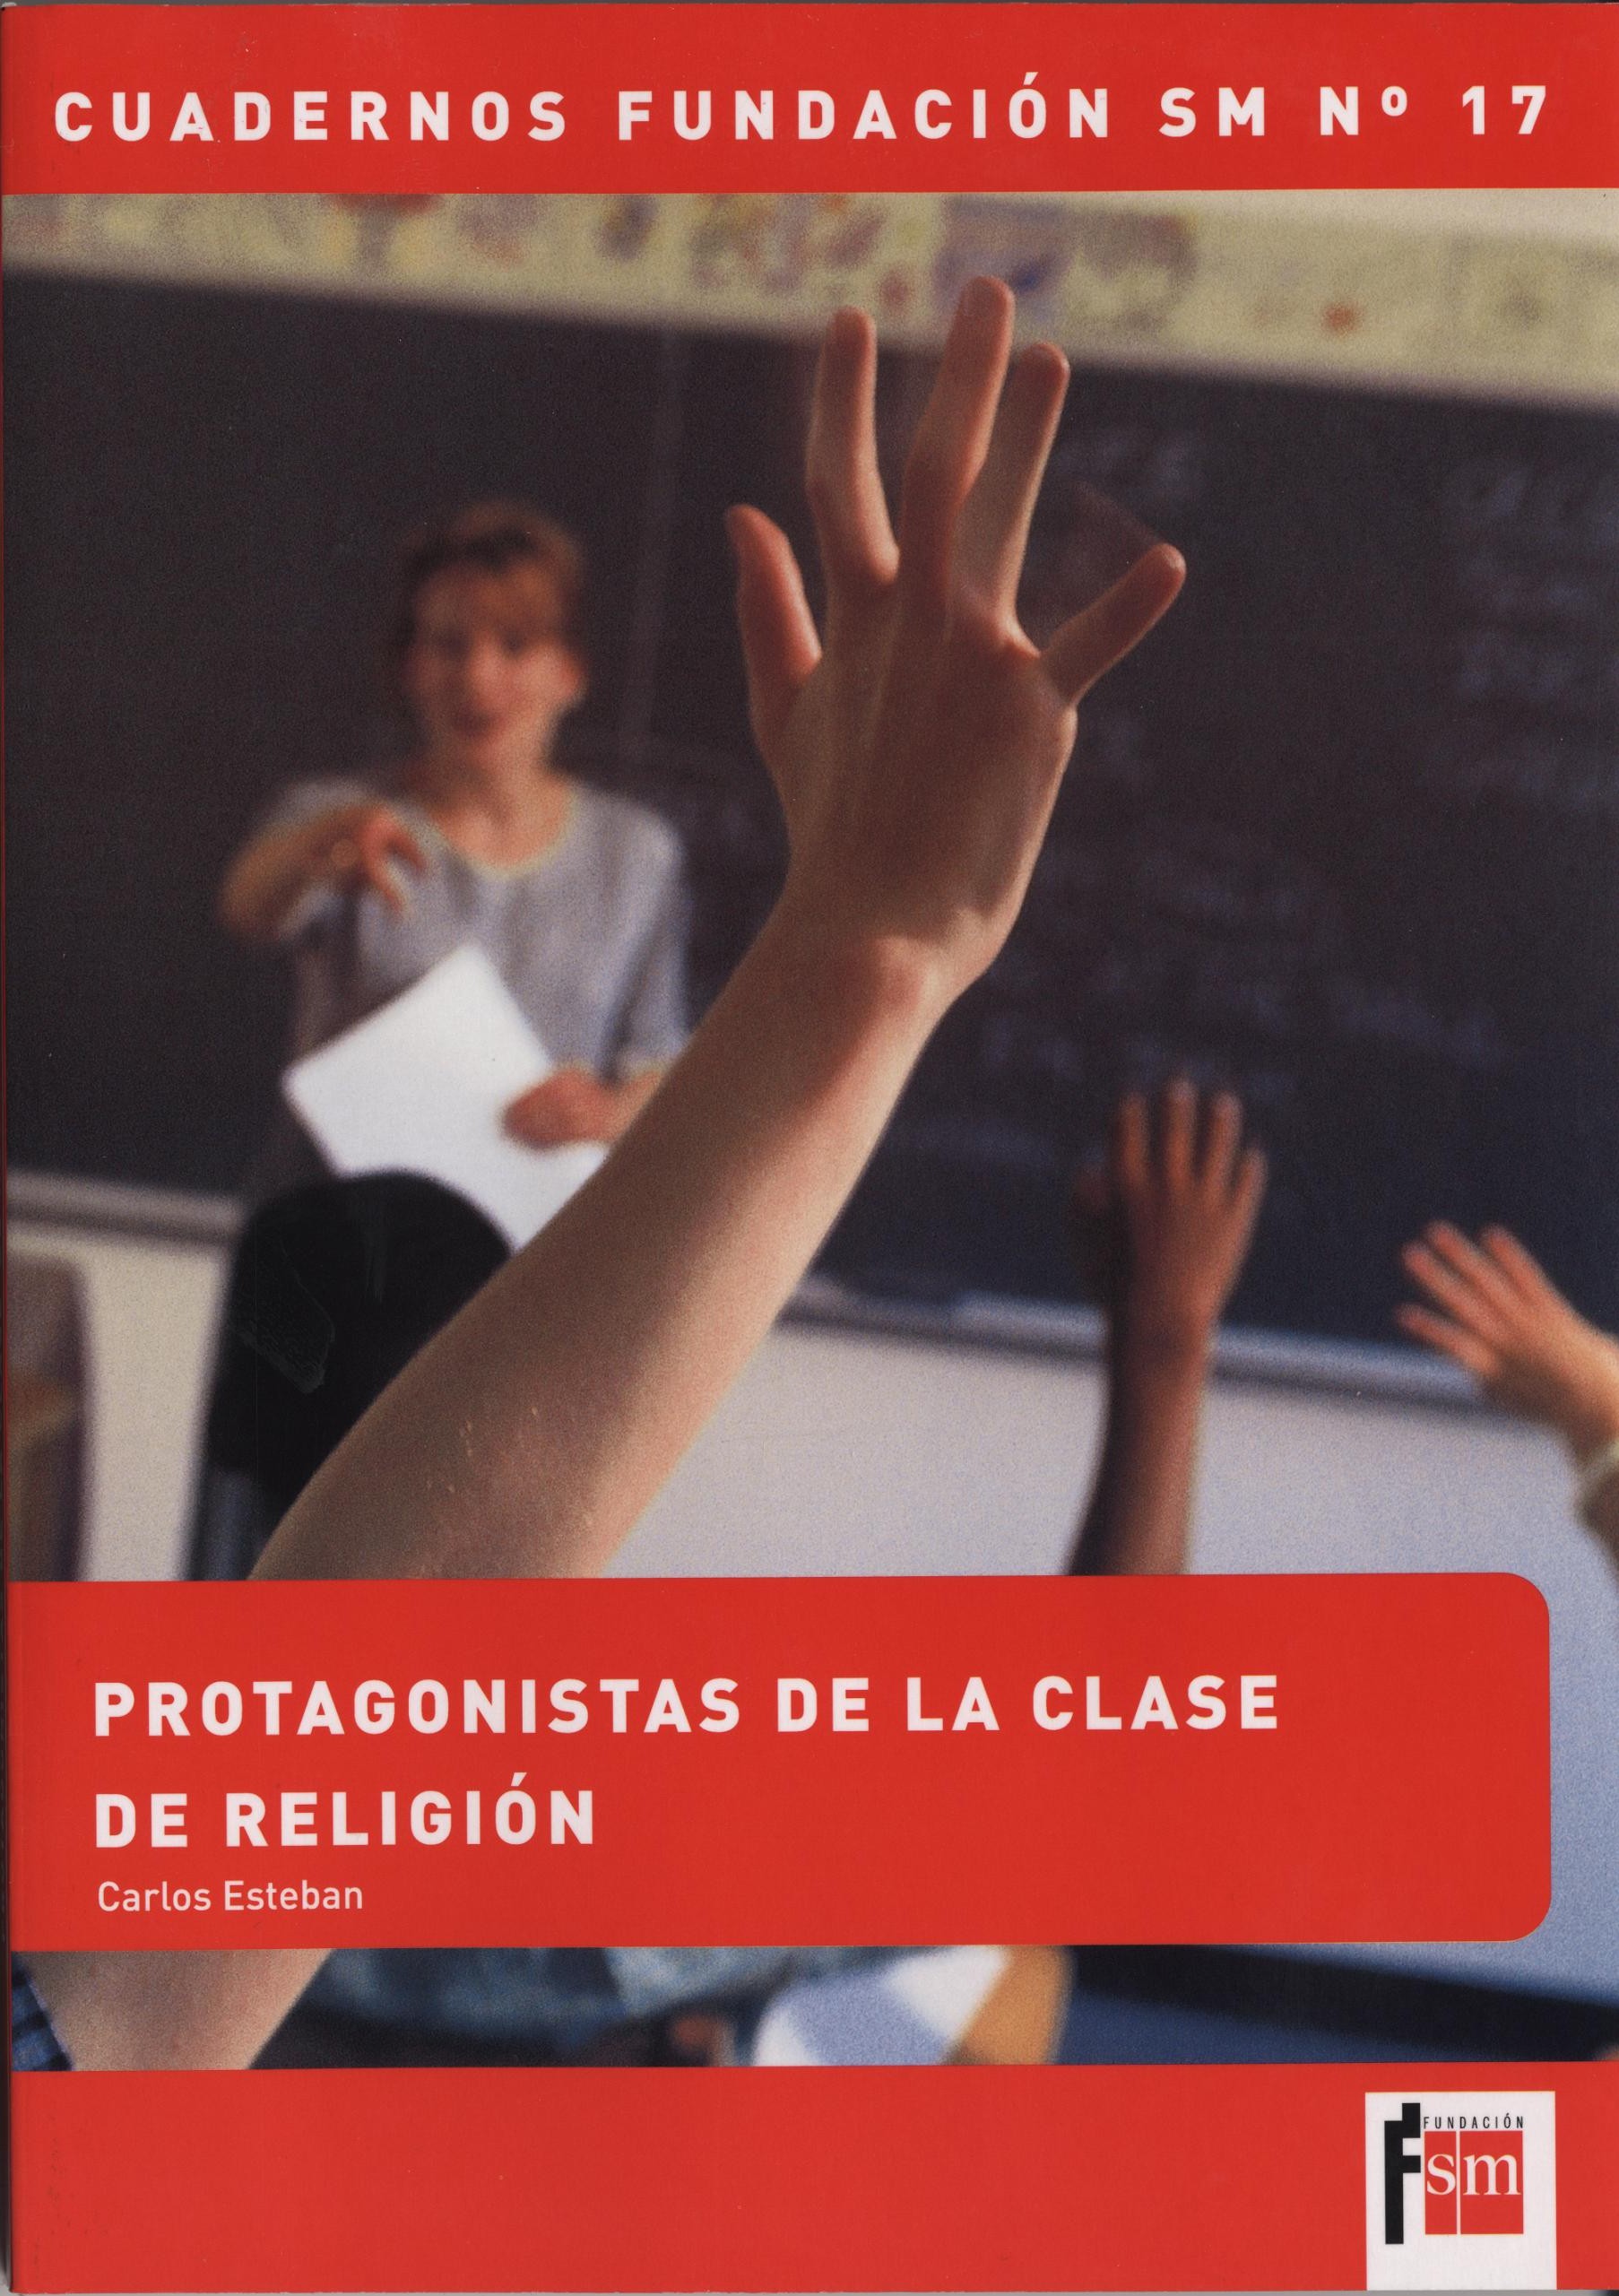 DOSSIER DE PRENSA ‘PROTAGONISTAS DE LA CLASE DE RELIGIÓN’